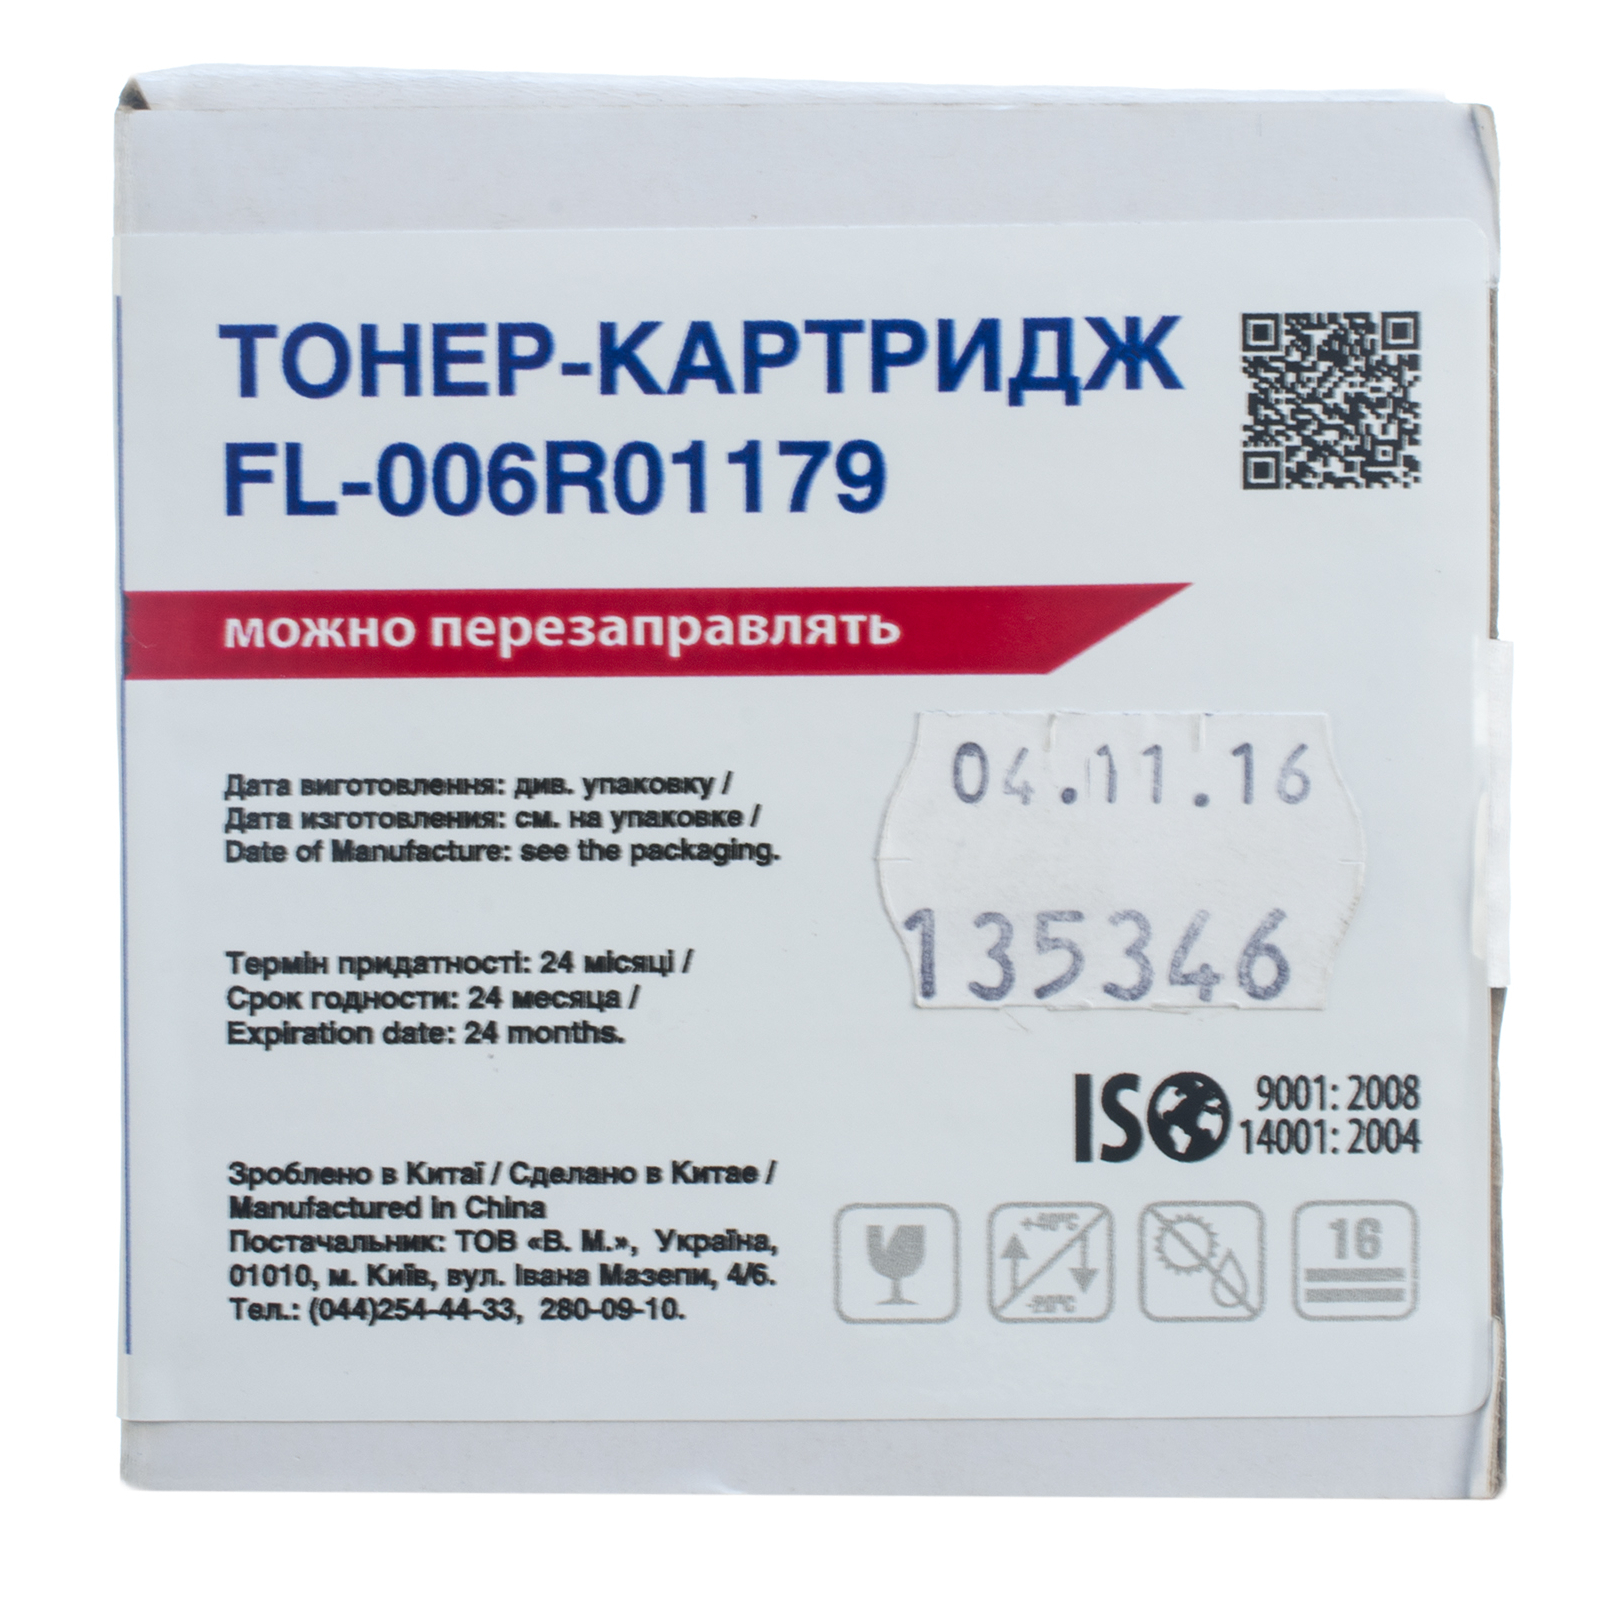 Тонер-картридж FREE Label XEROX 006R01179 (WC M118) (FL-006R01179) зображення 3